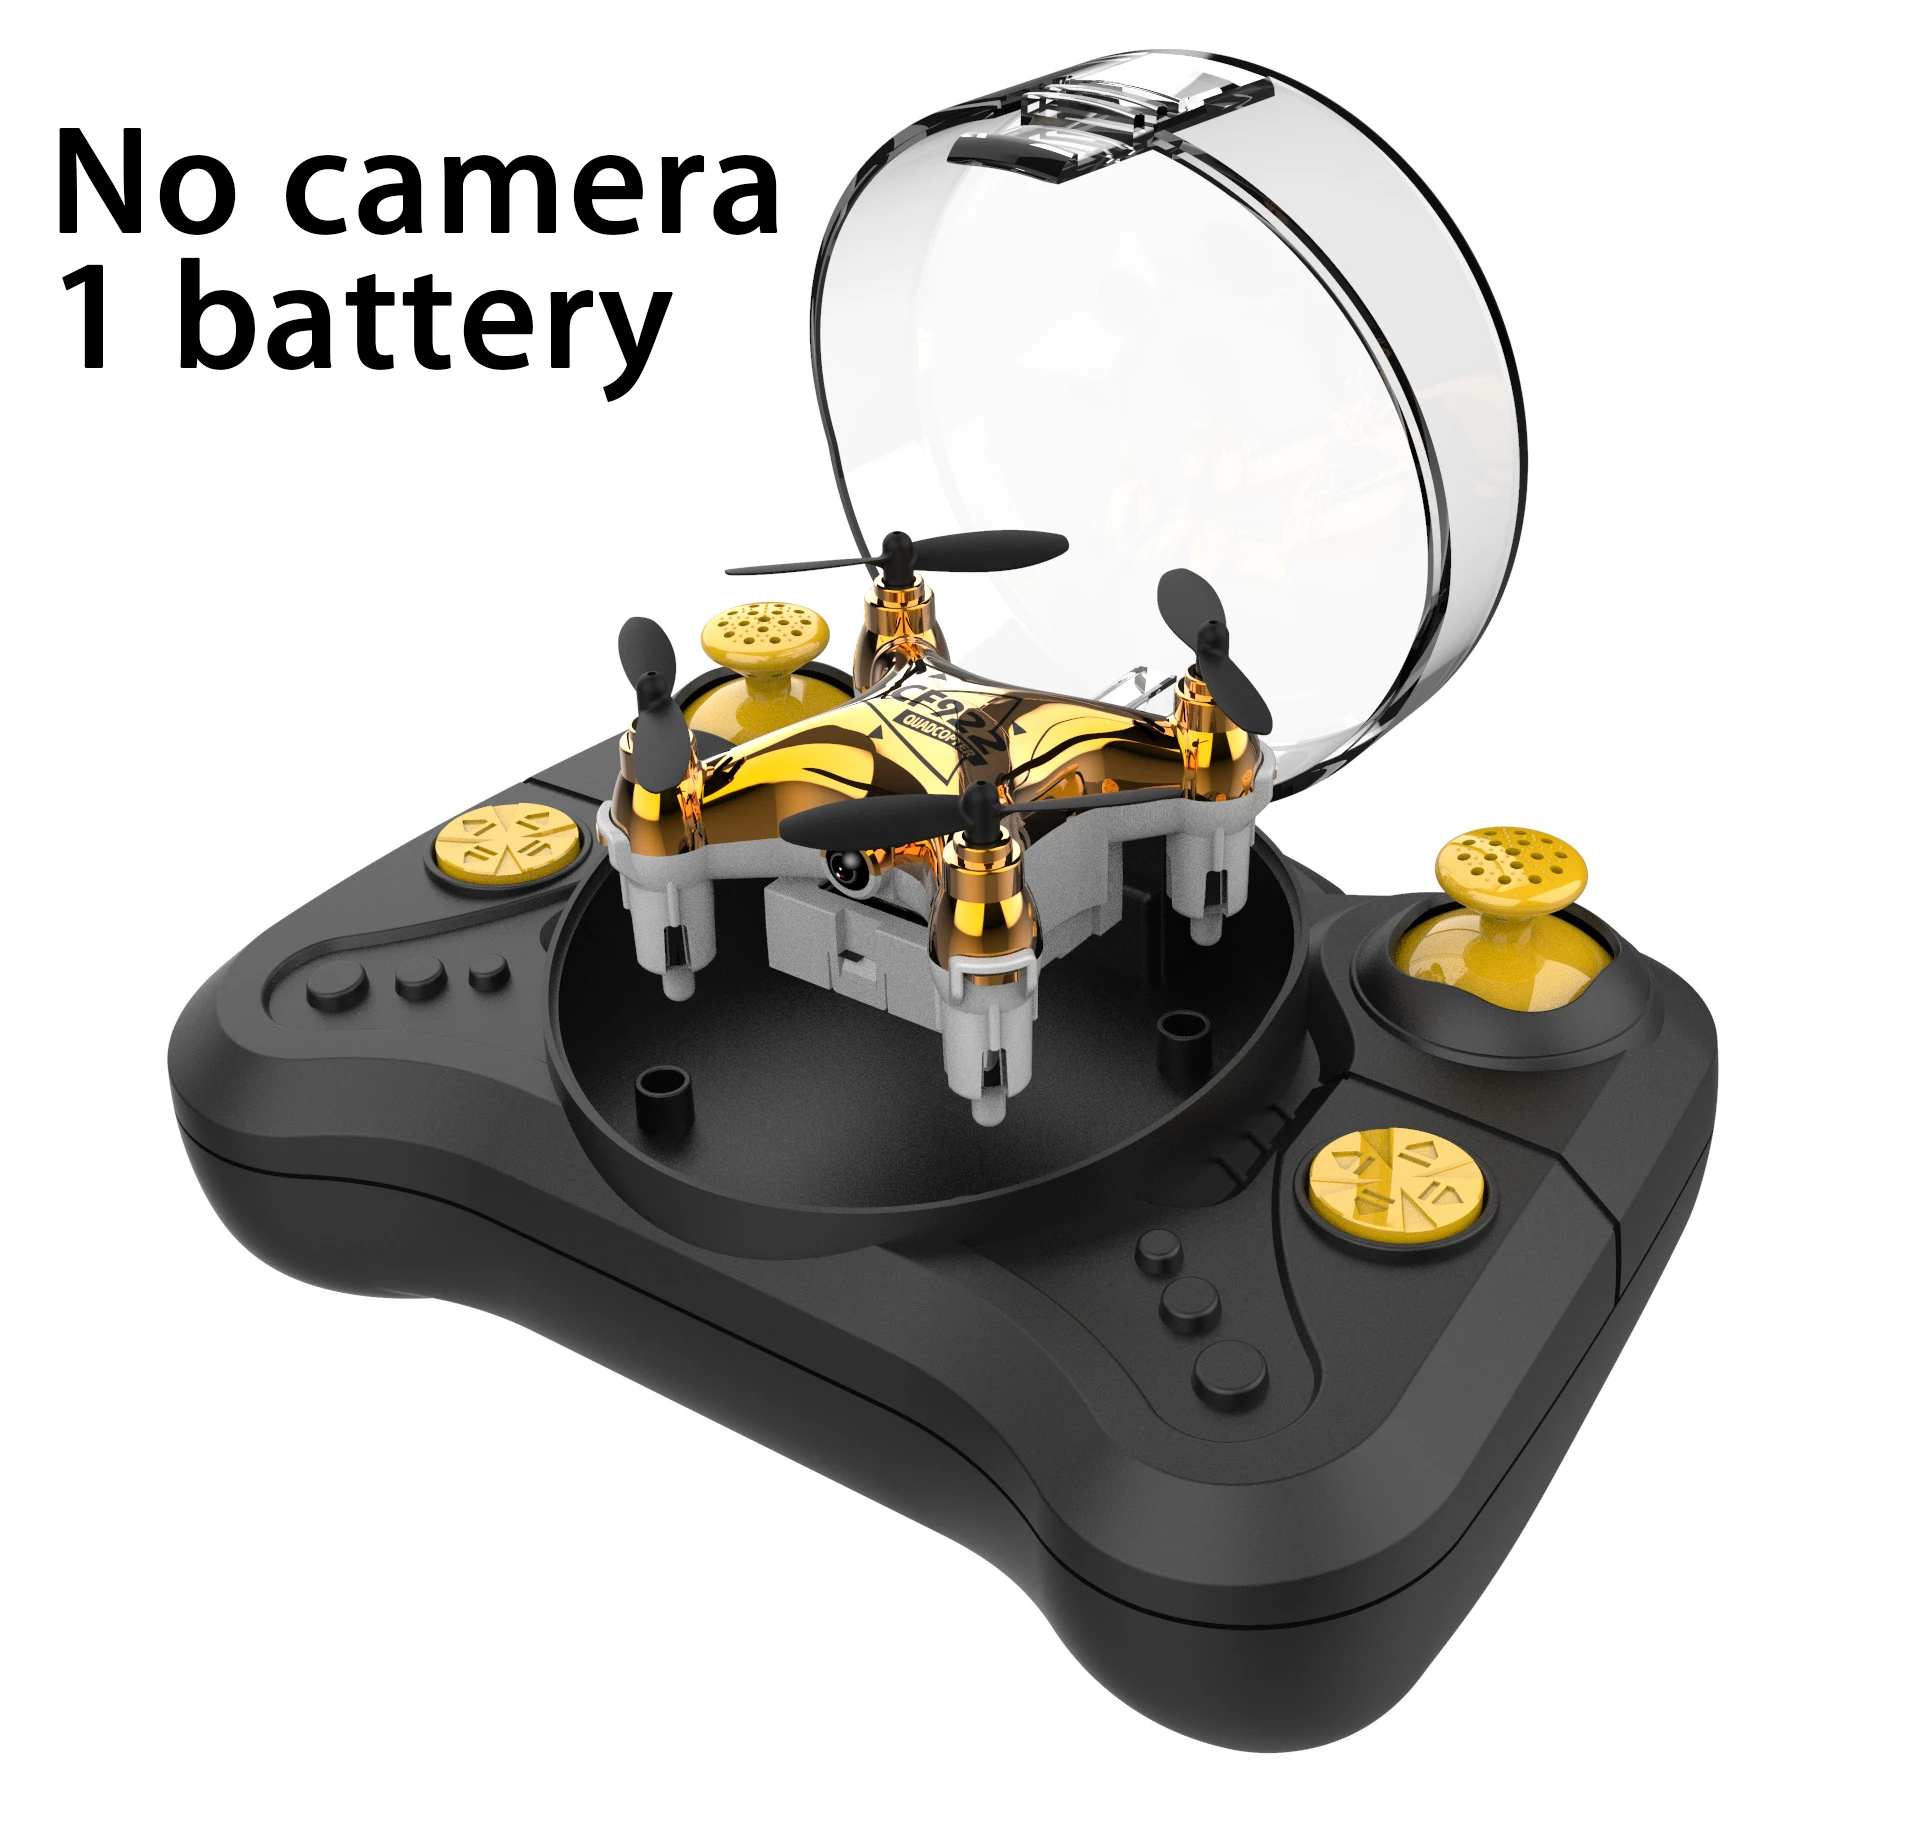 Mini dron plegable con cámara HD para niños, cuadricóptero de bolsillo,  Wifi, Selfie, juguetes para exteriores e interiores - AliExpress